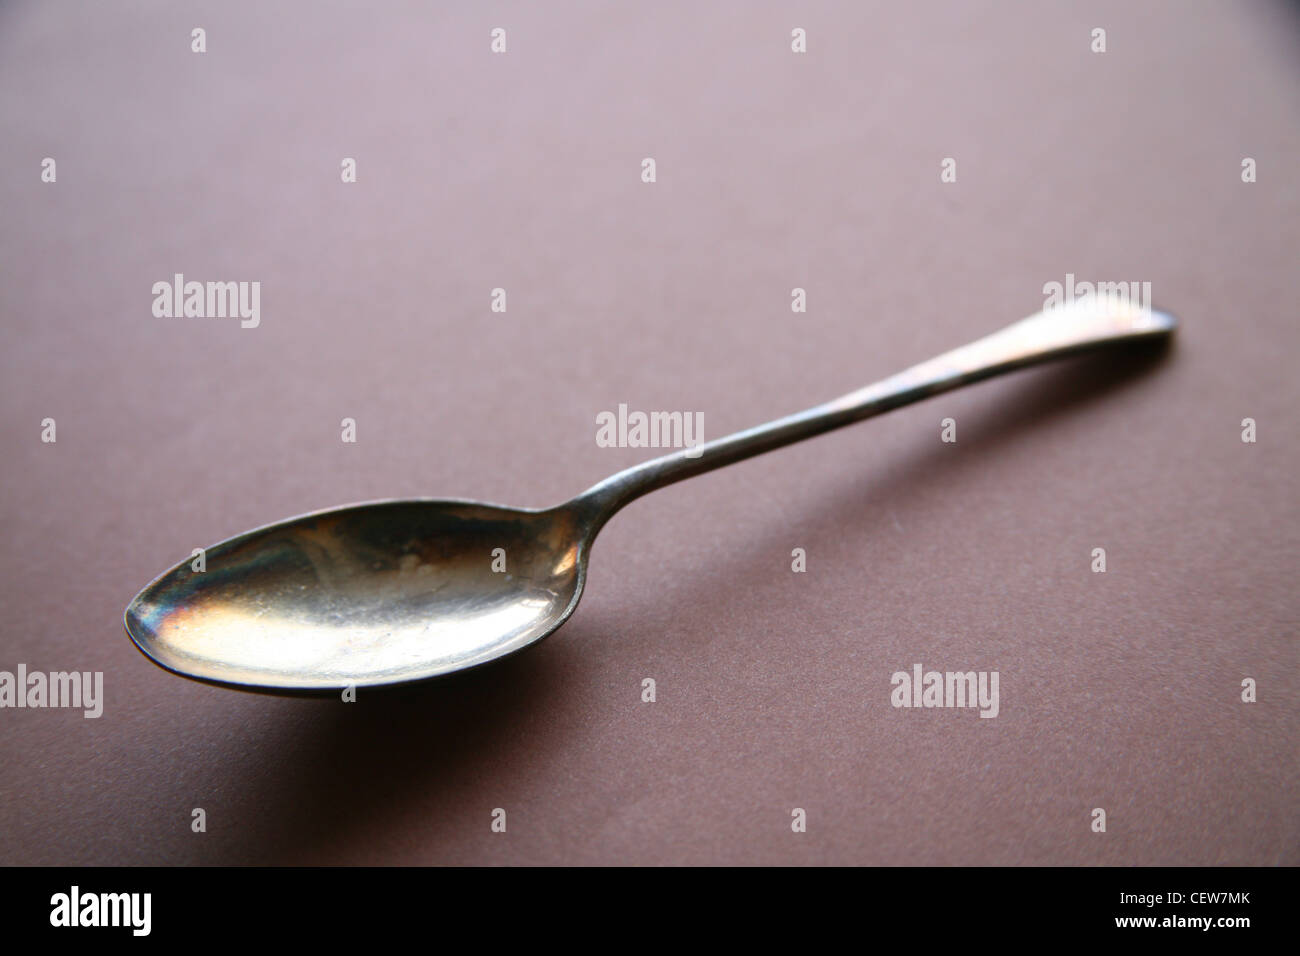 Vintage silver spoon Stock Photo